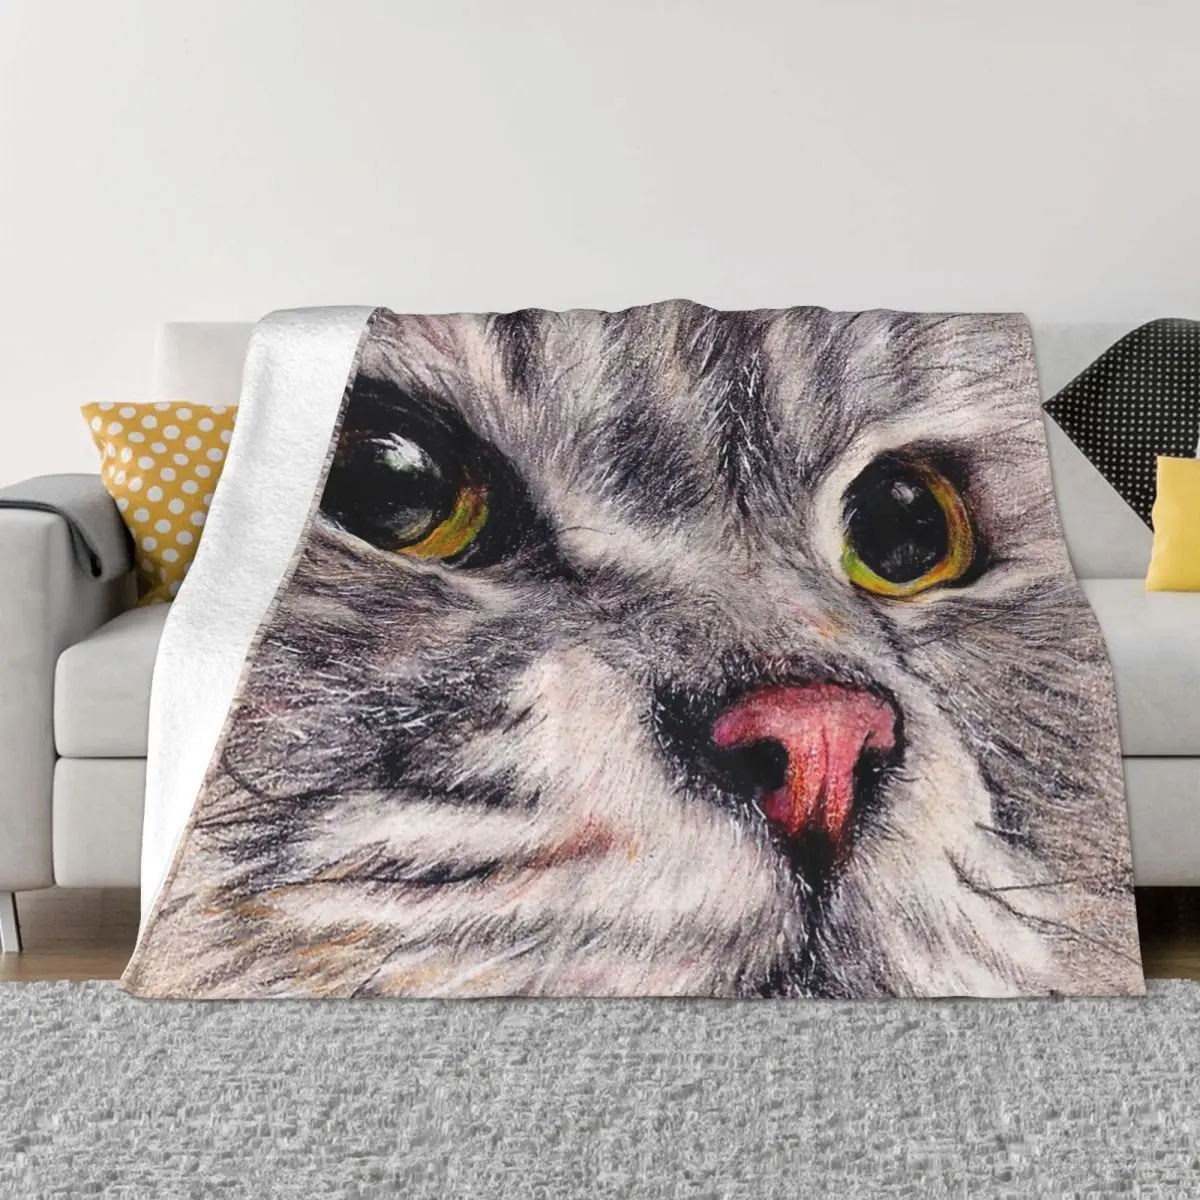 

Художественное фланелевое одеяло для влюбленных кошек, удобное мягкое флисовое покрывало в английском стиле Longhair с красивым лицом